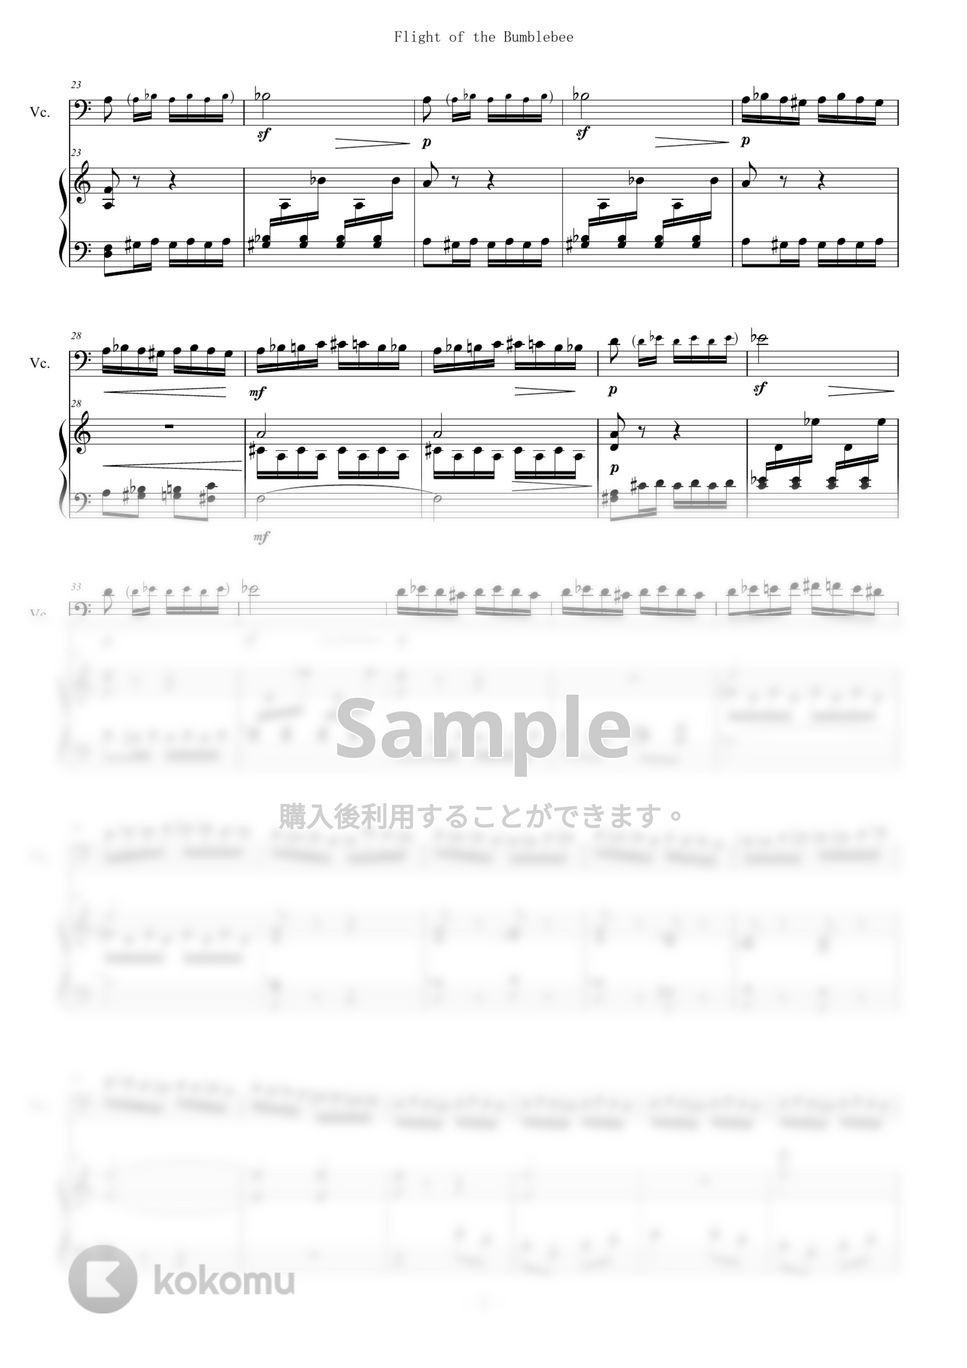 Rimsky-Korsakov - 熊蜂の飛行 for Cello and Piano (Flight of the Bumblebee) (ピアノ/Cello/チェロ) by Zoe